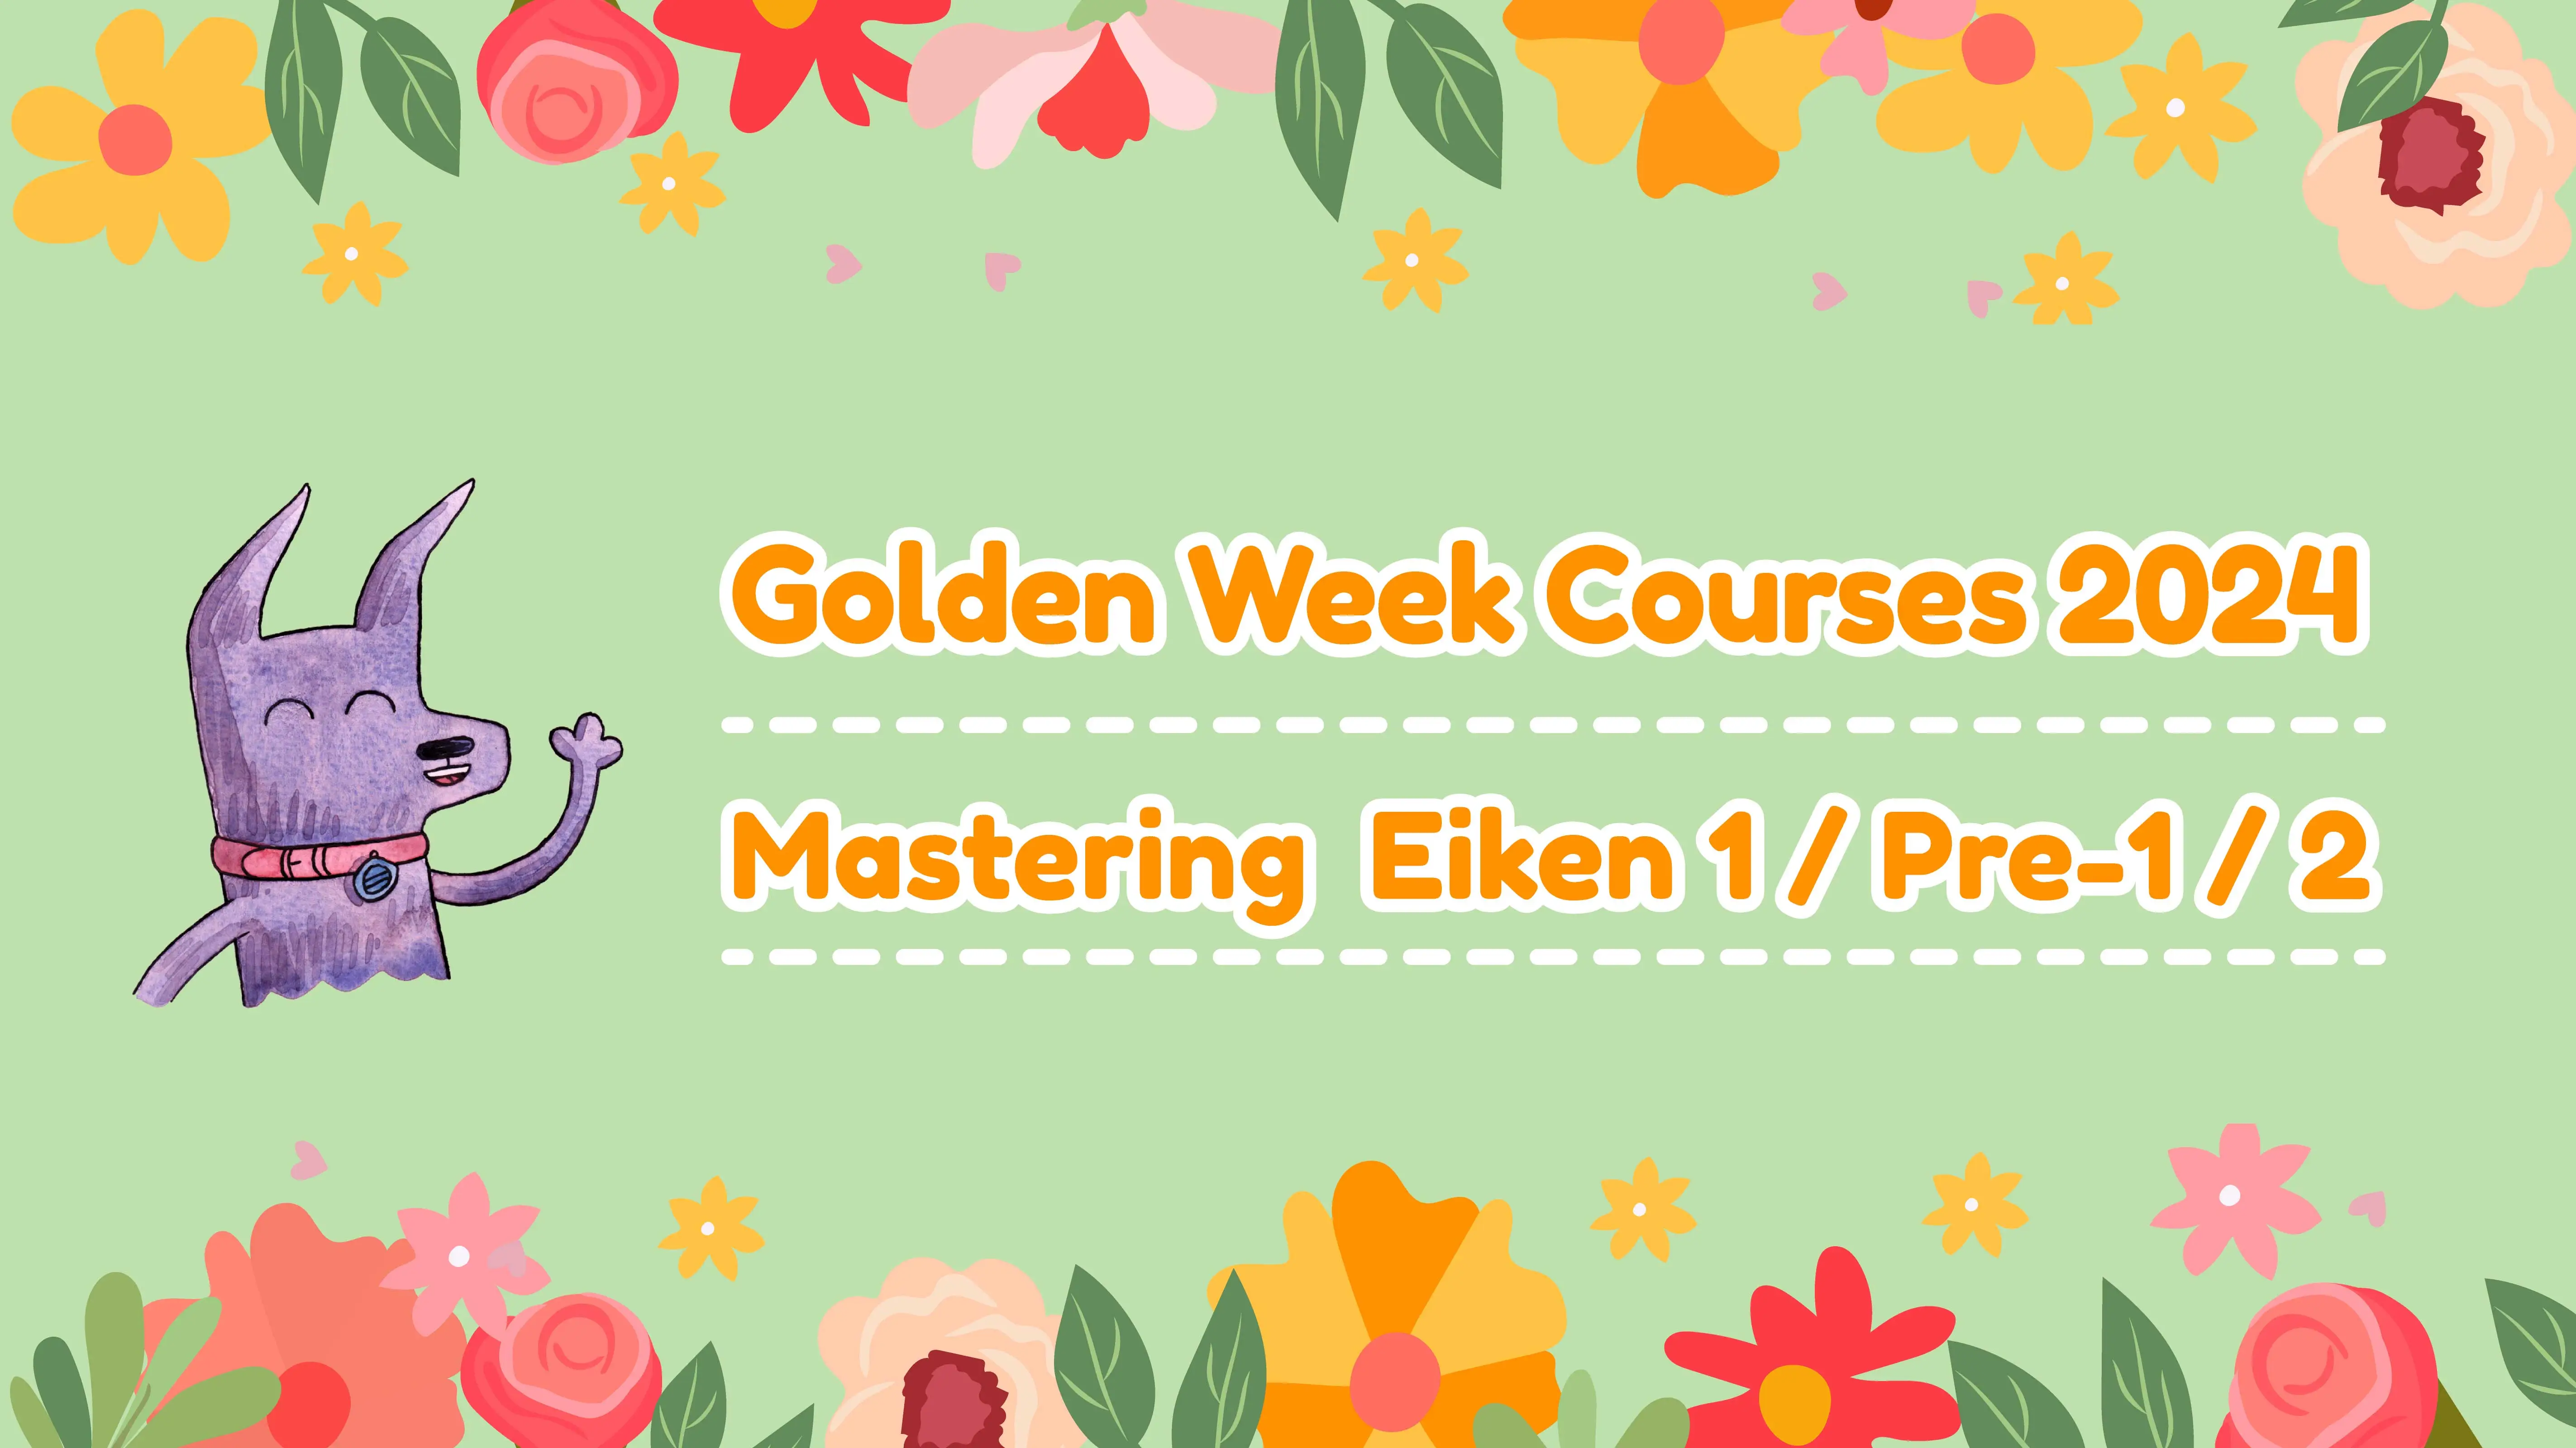 Golden Week Courses 2024 - Mastering Eiken 1/Pre-1/2